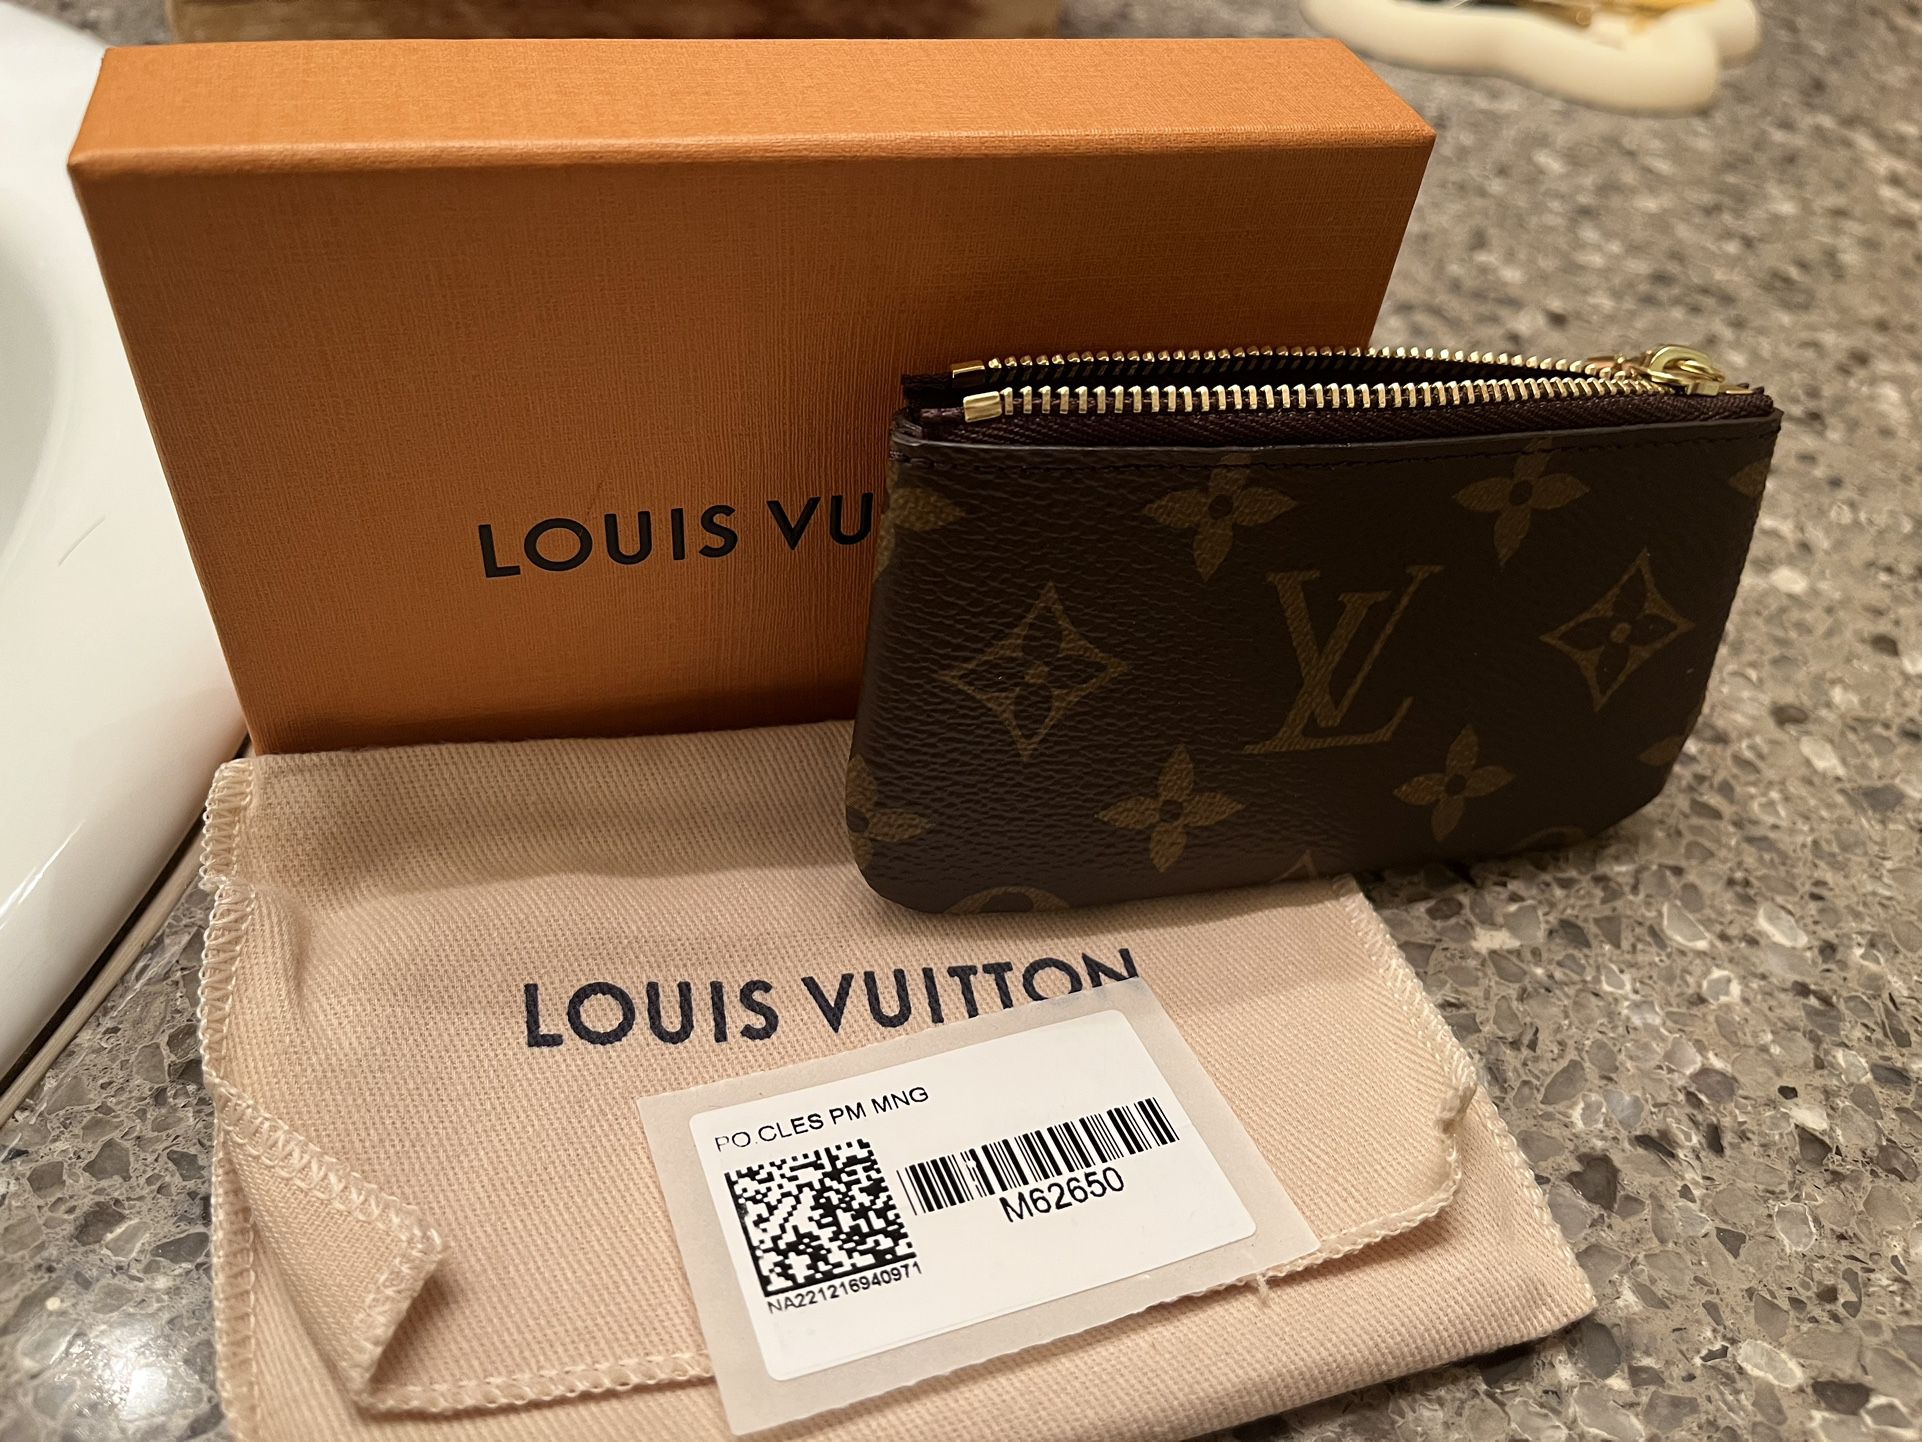 Louis Vuitton keychain Wallet for Sale in Santa Clarita, CA - OfferUp